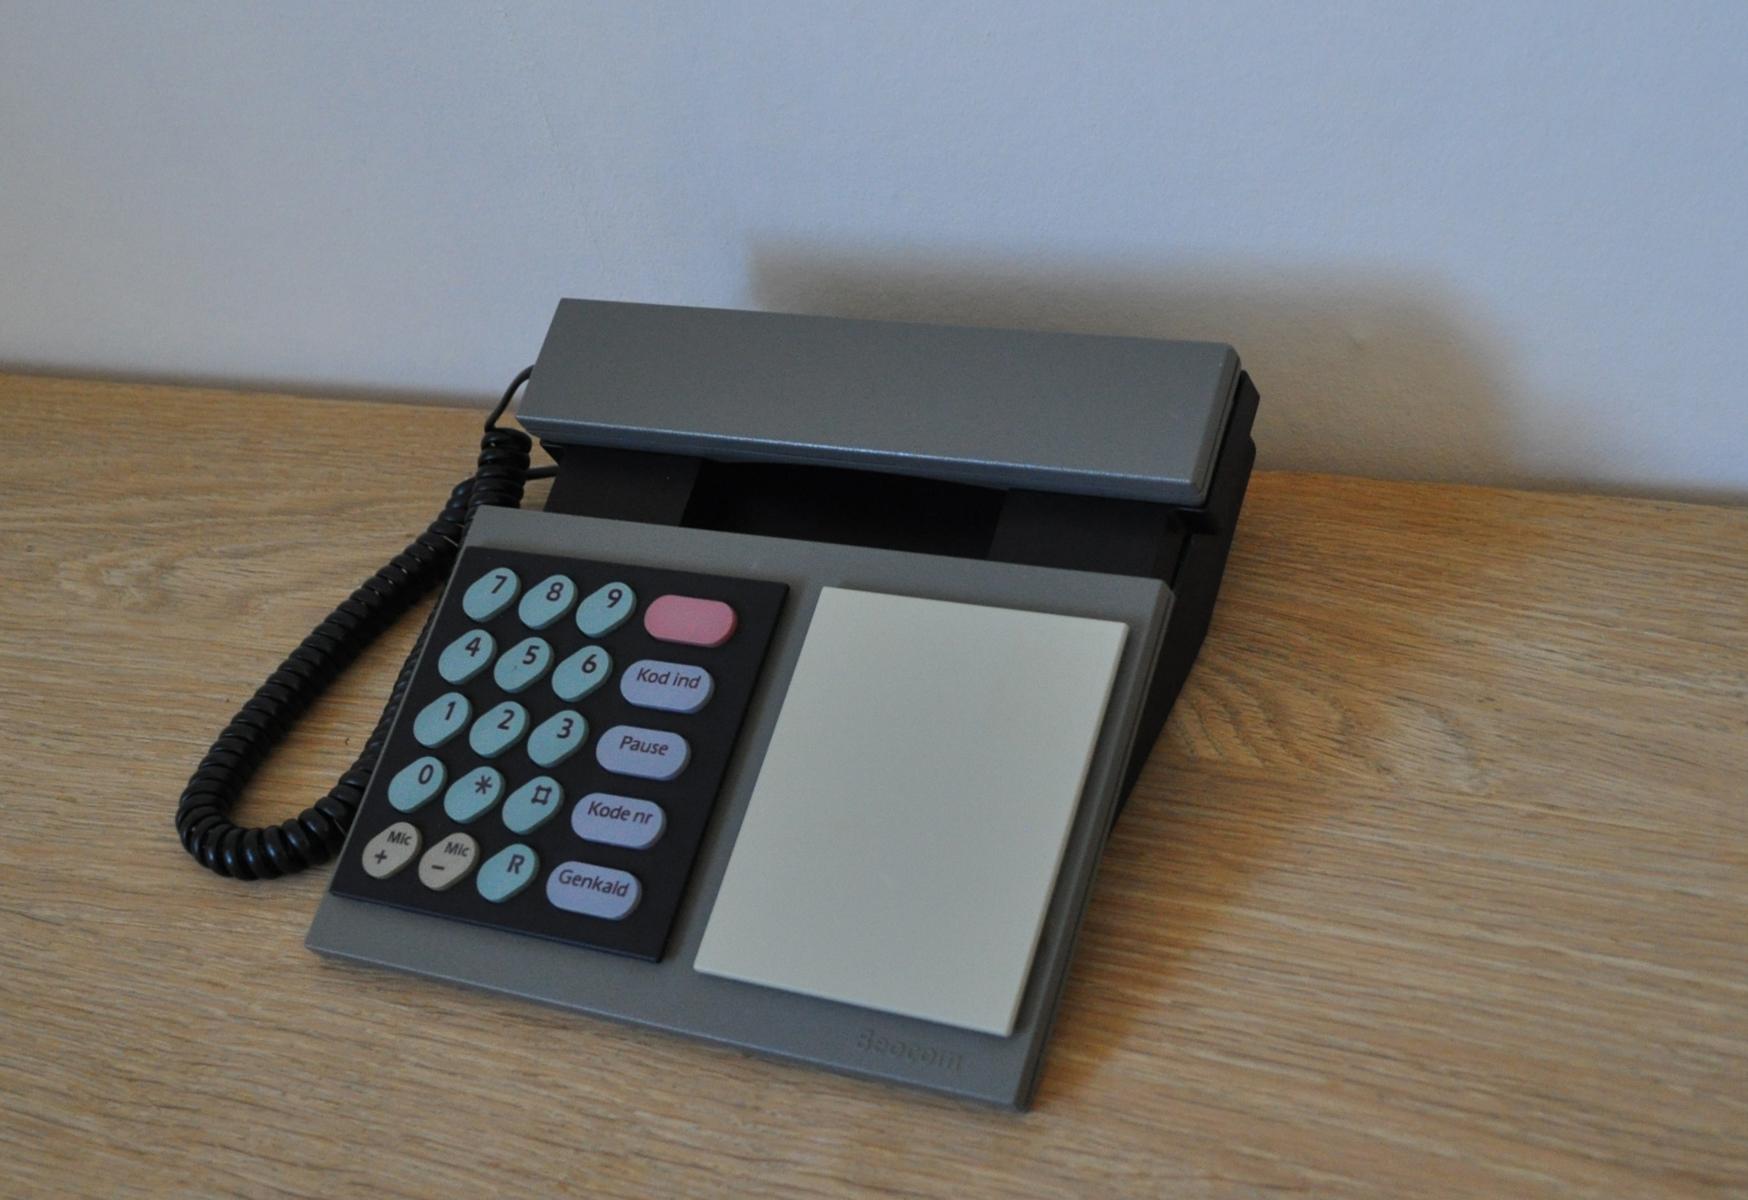 Beocom 1000 Telefon von 1986 von Bang & Olusfen.
Vollständig funktionsfähig.

Geschichte: 